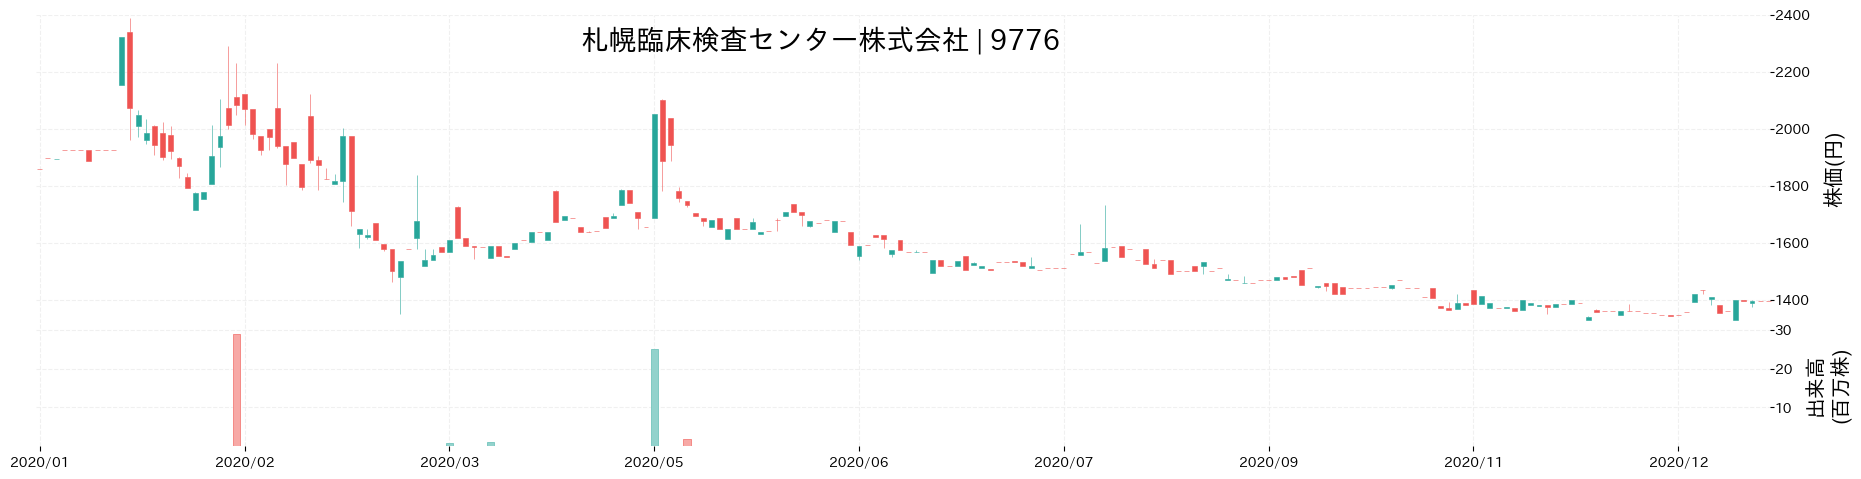 札幌臨床検査センターの株価推移(2020)